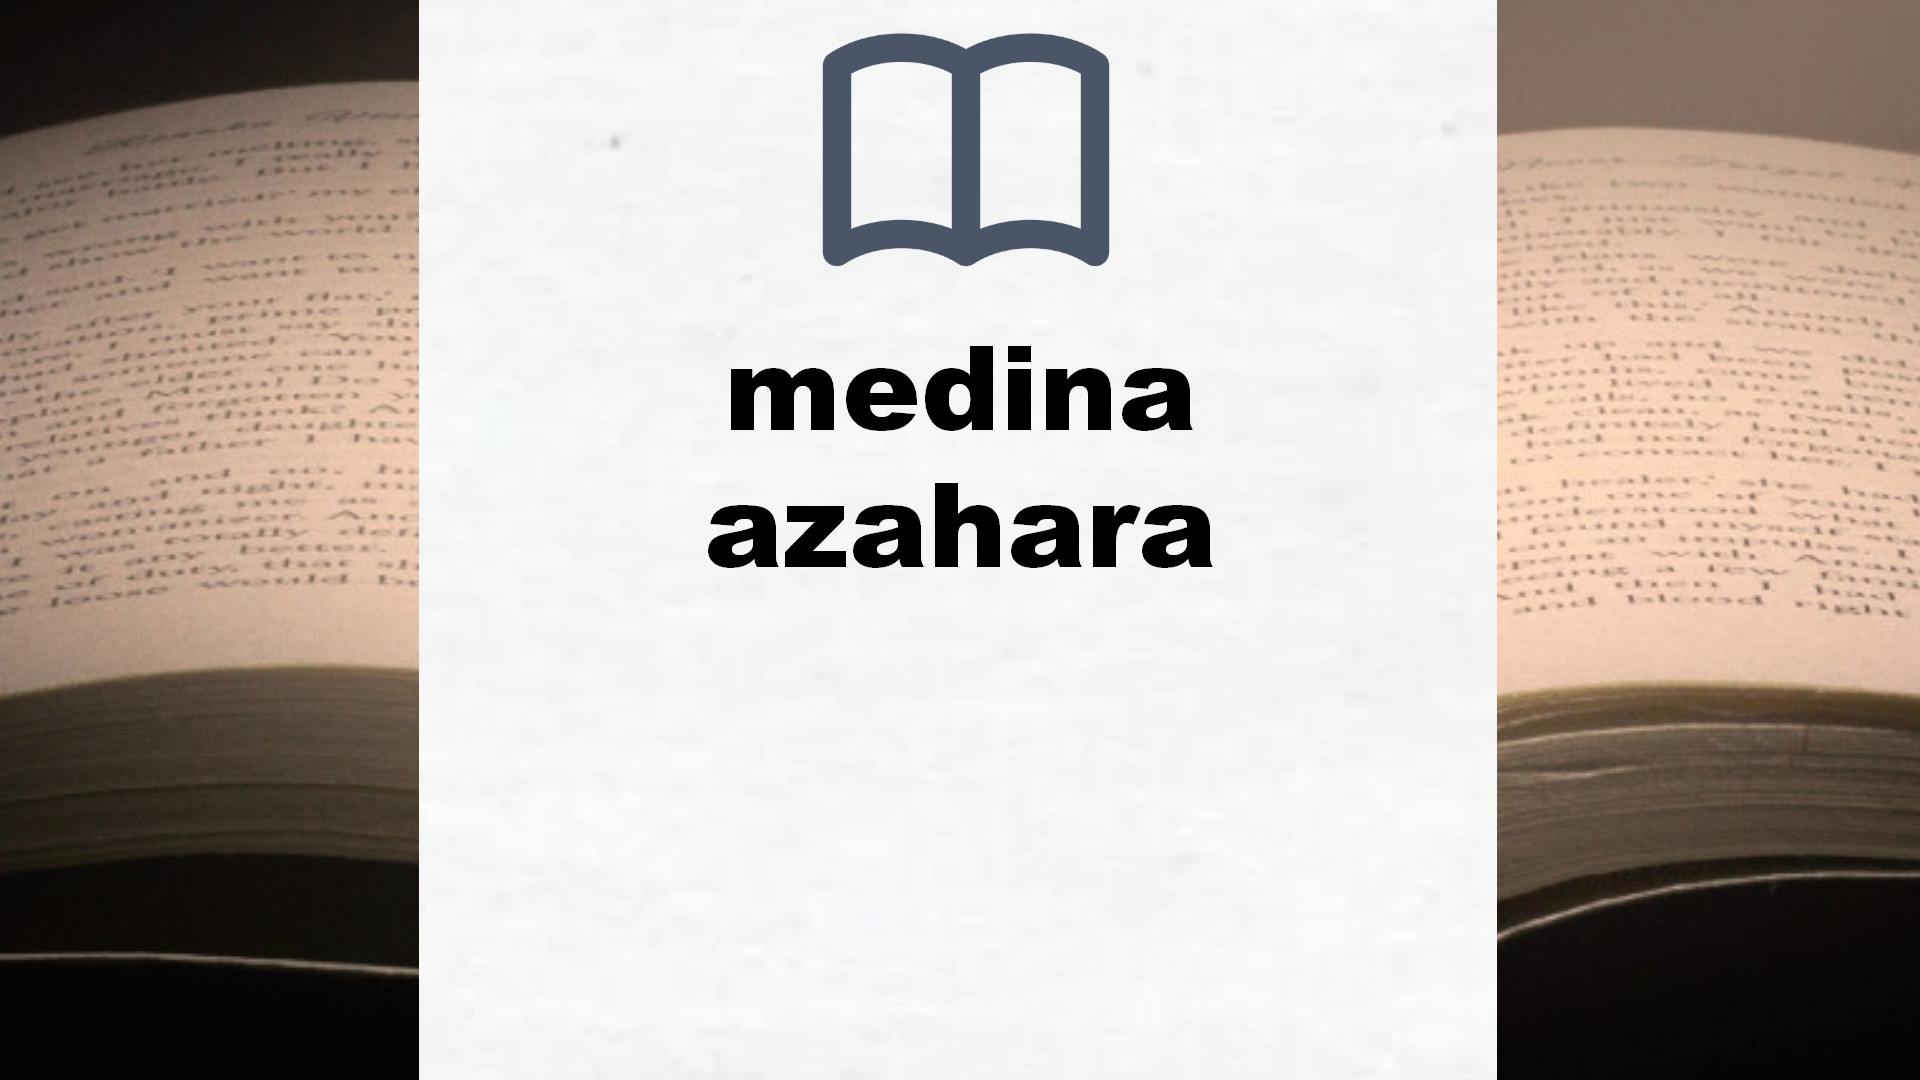 Libros sobre medina azahara